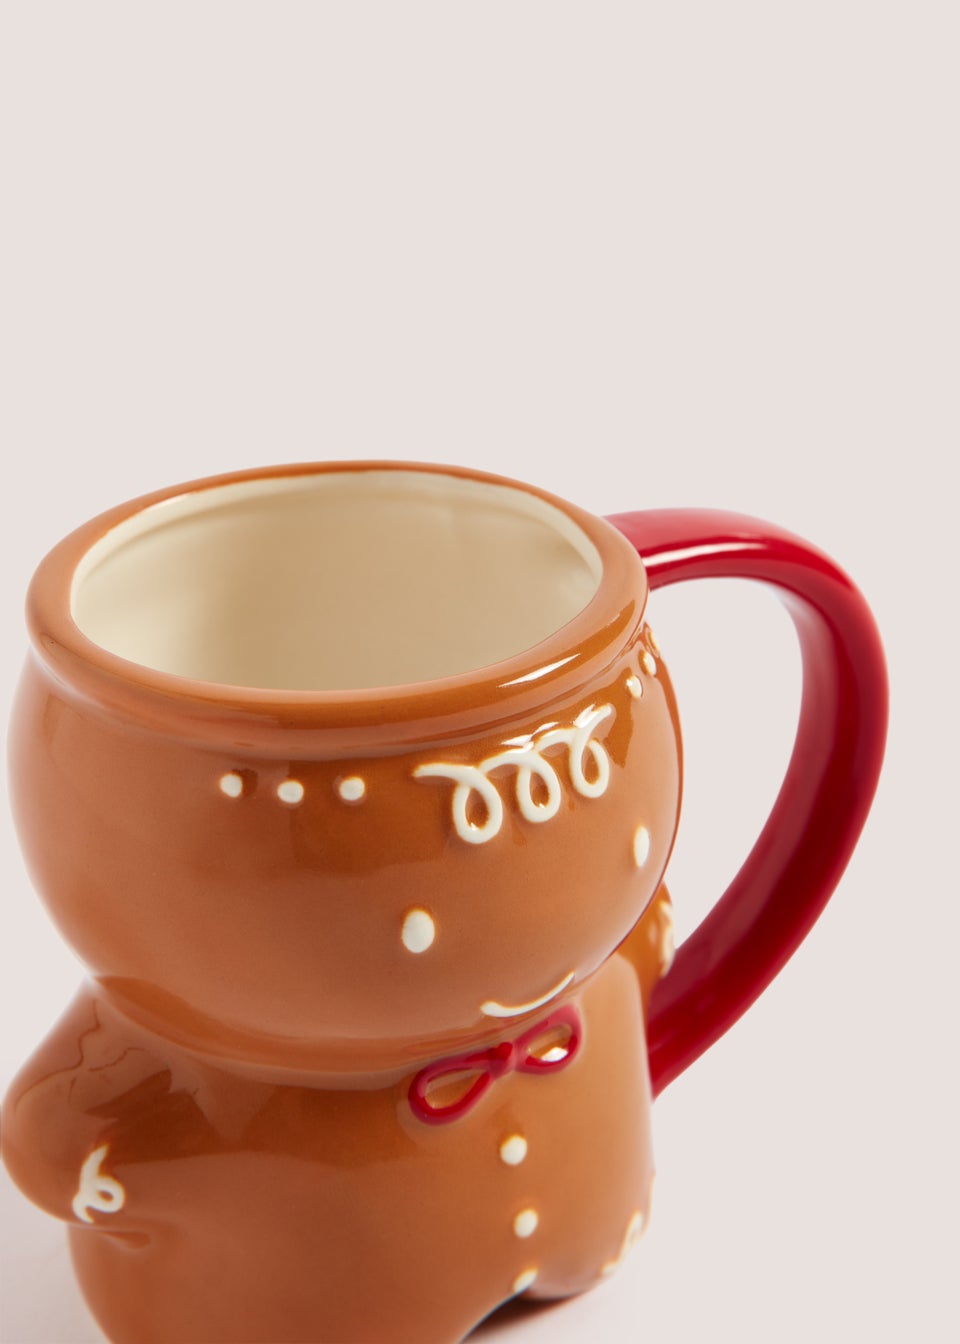 Gingerbread Man Mug (10cm x 8.5cm)